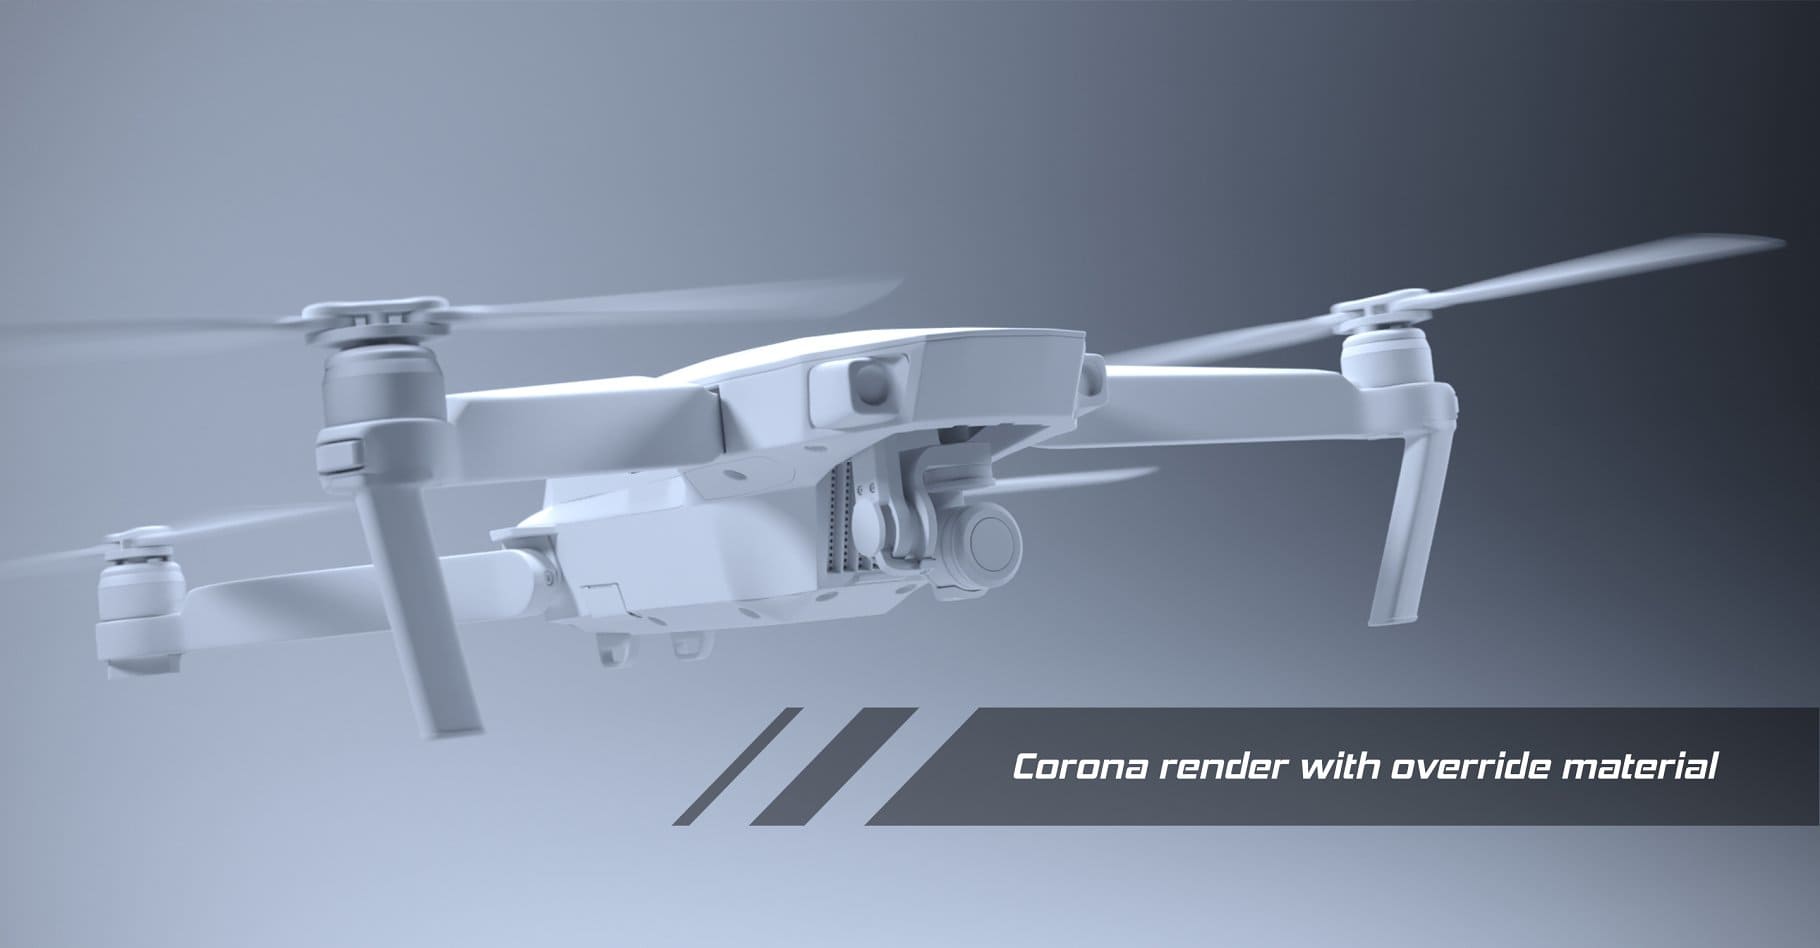 White Dji mavic pro quadcopter in 3D model.